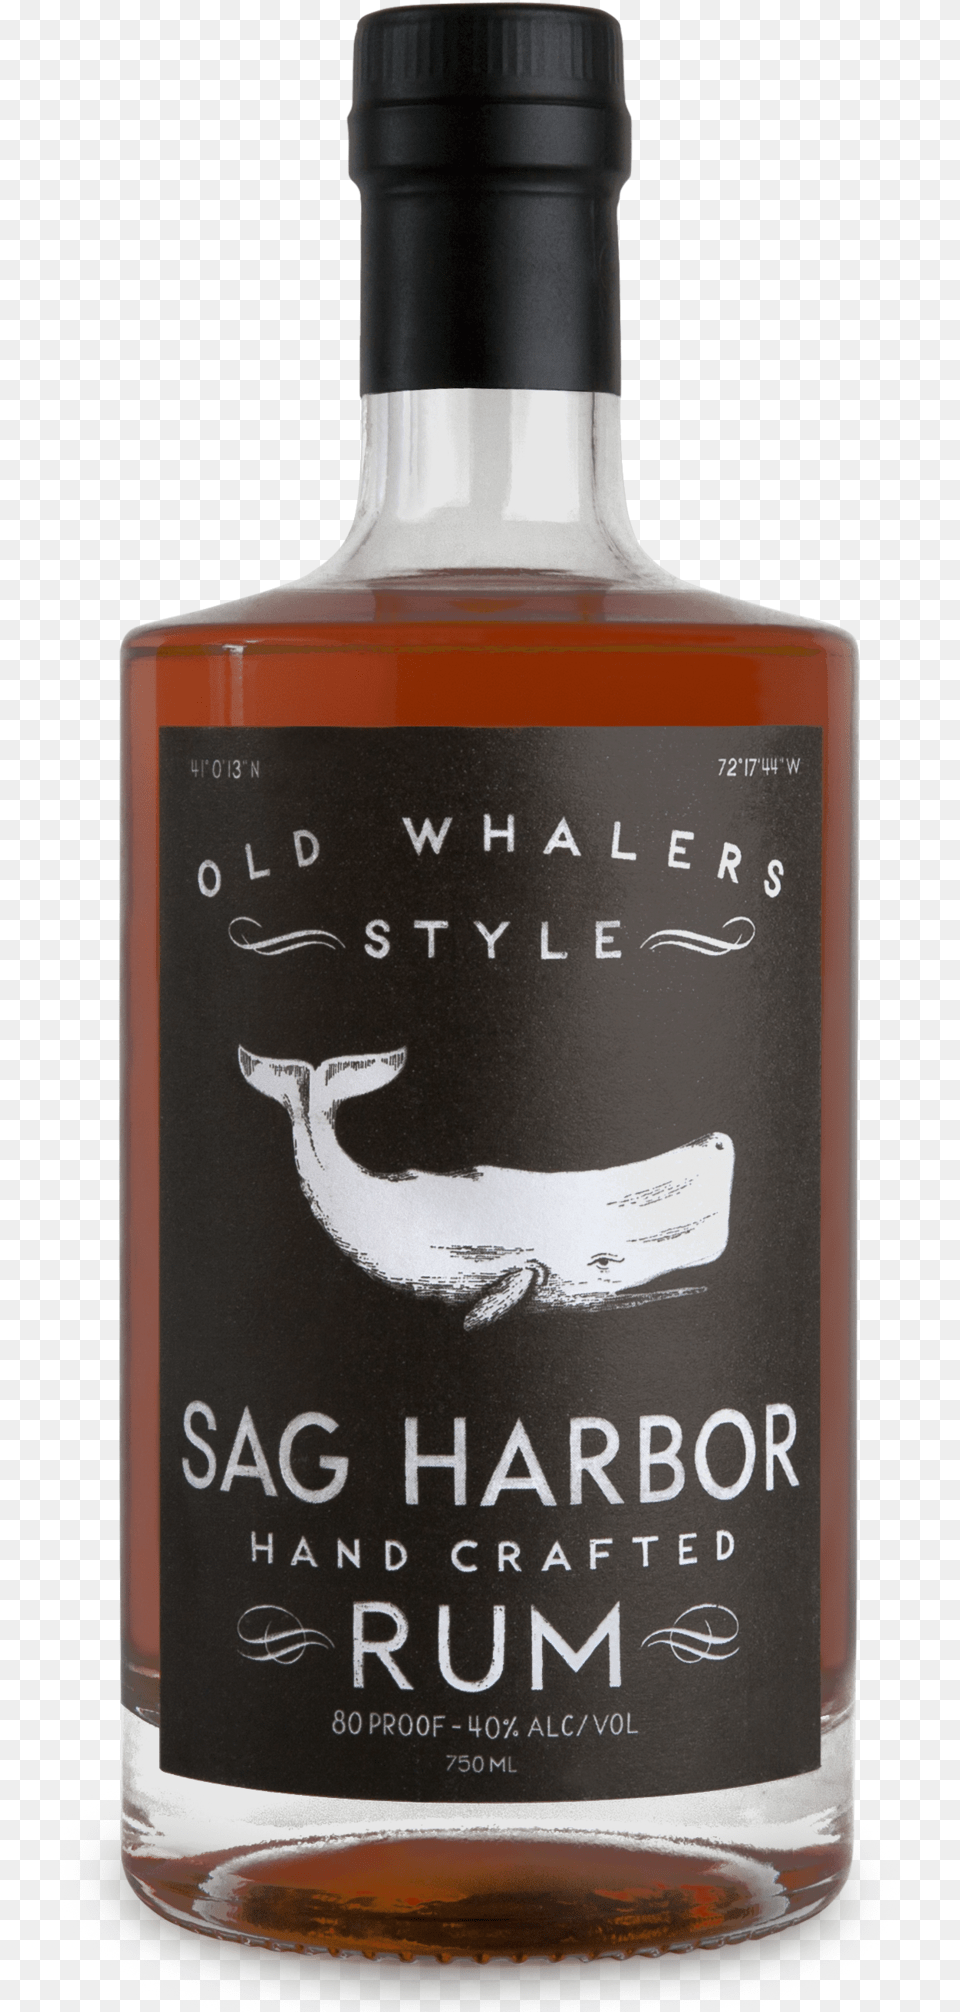 Long Island Spirits Sag Harbor Old Whalers Style Hand Sag Harbor Old Whalers Style Rum, Alcohol, Beverage, Liquor, Bottle Free Png Download